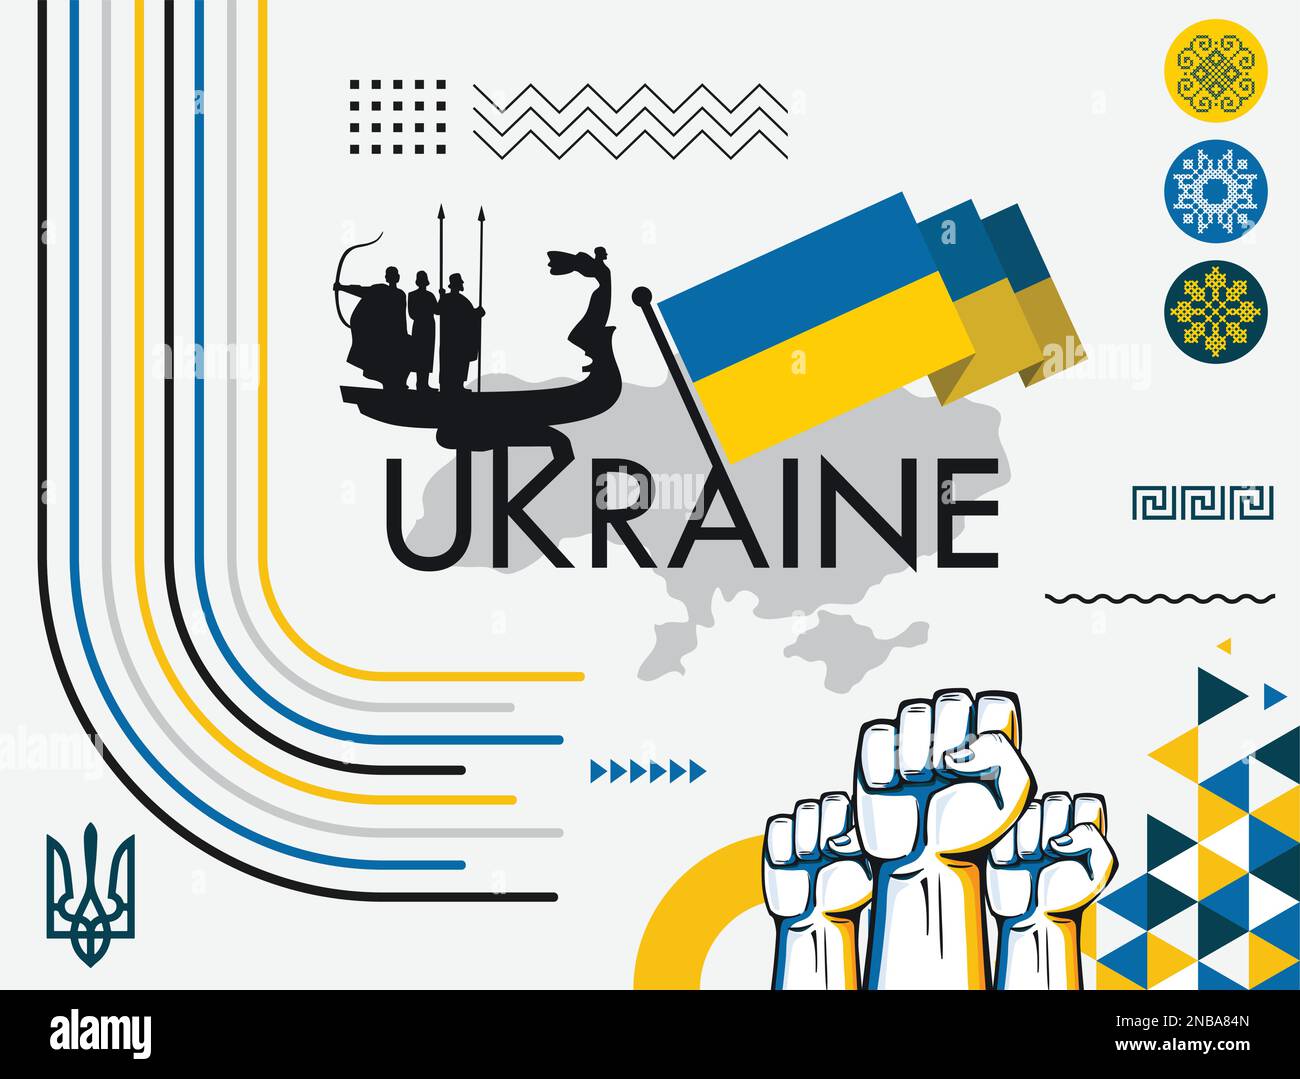 Ukrainisches Banner für den Nationalfeiertag, abstraktes modernes Design. Ukrainische Flaggenkarte, blaues gelbes Farbschema. Krieg mit erhobenen Fäusten, kultureller Hintergrund. Vektor Stock Vektor